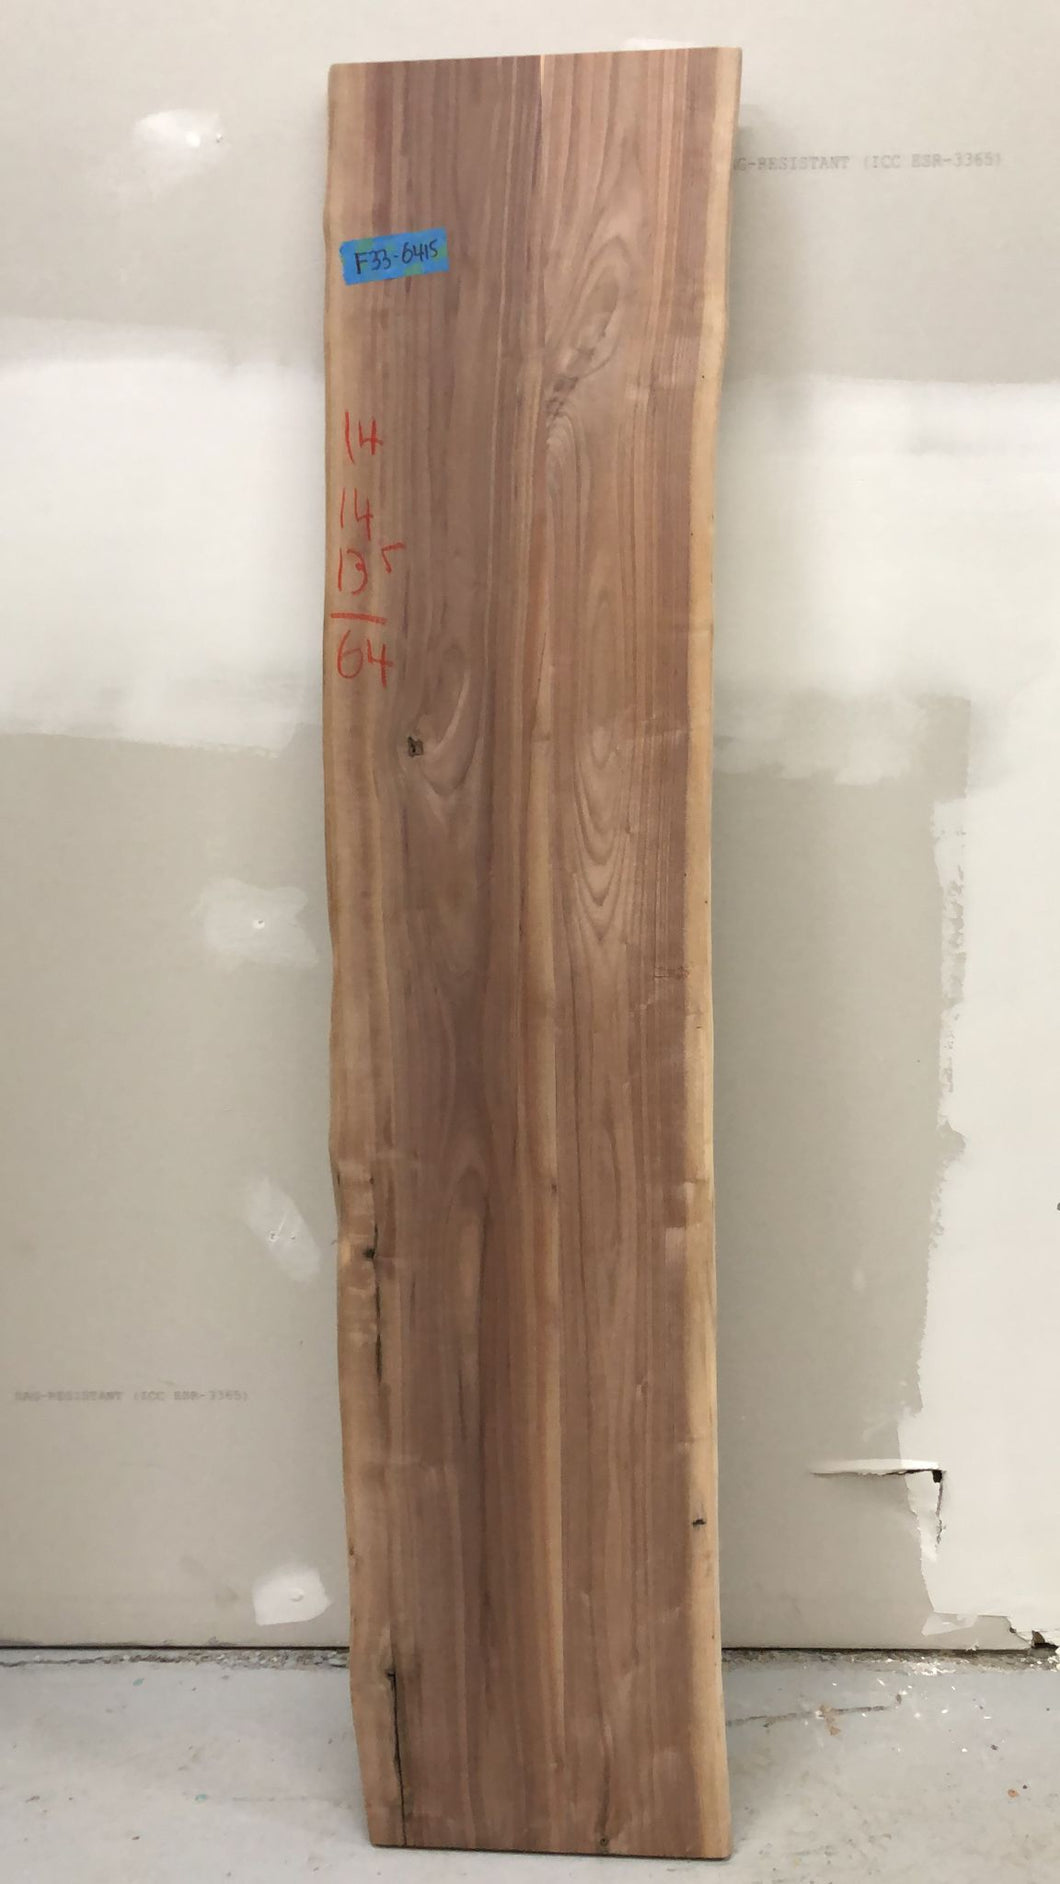 F33-6415 Live edge walnut wood 64